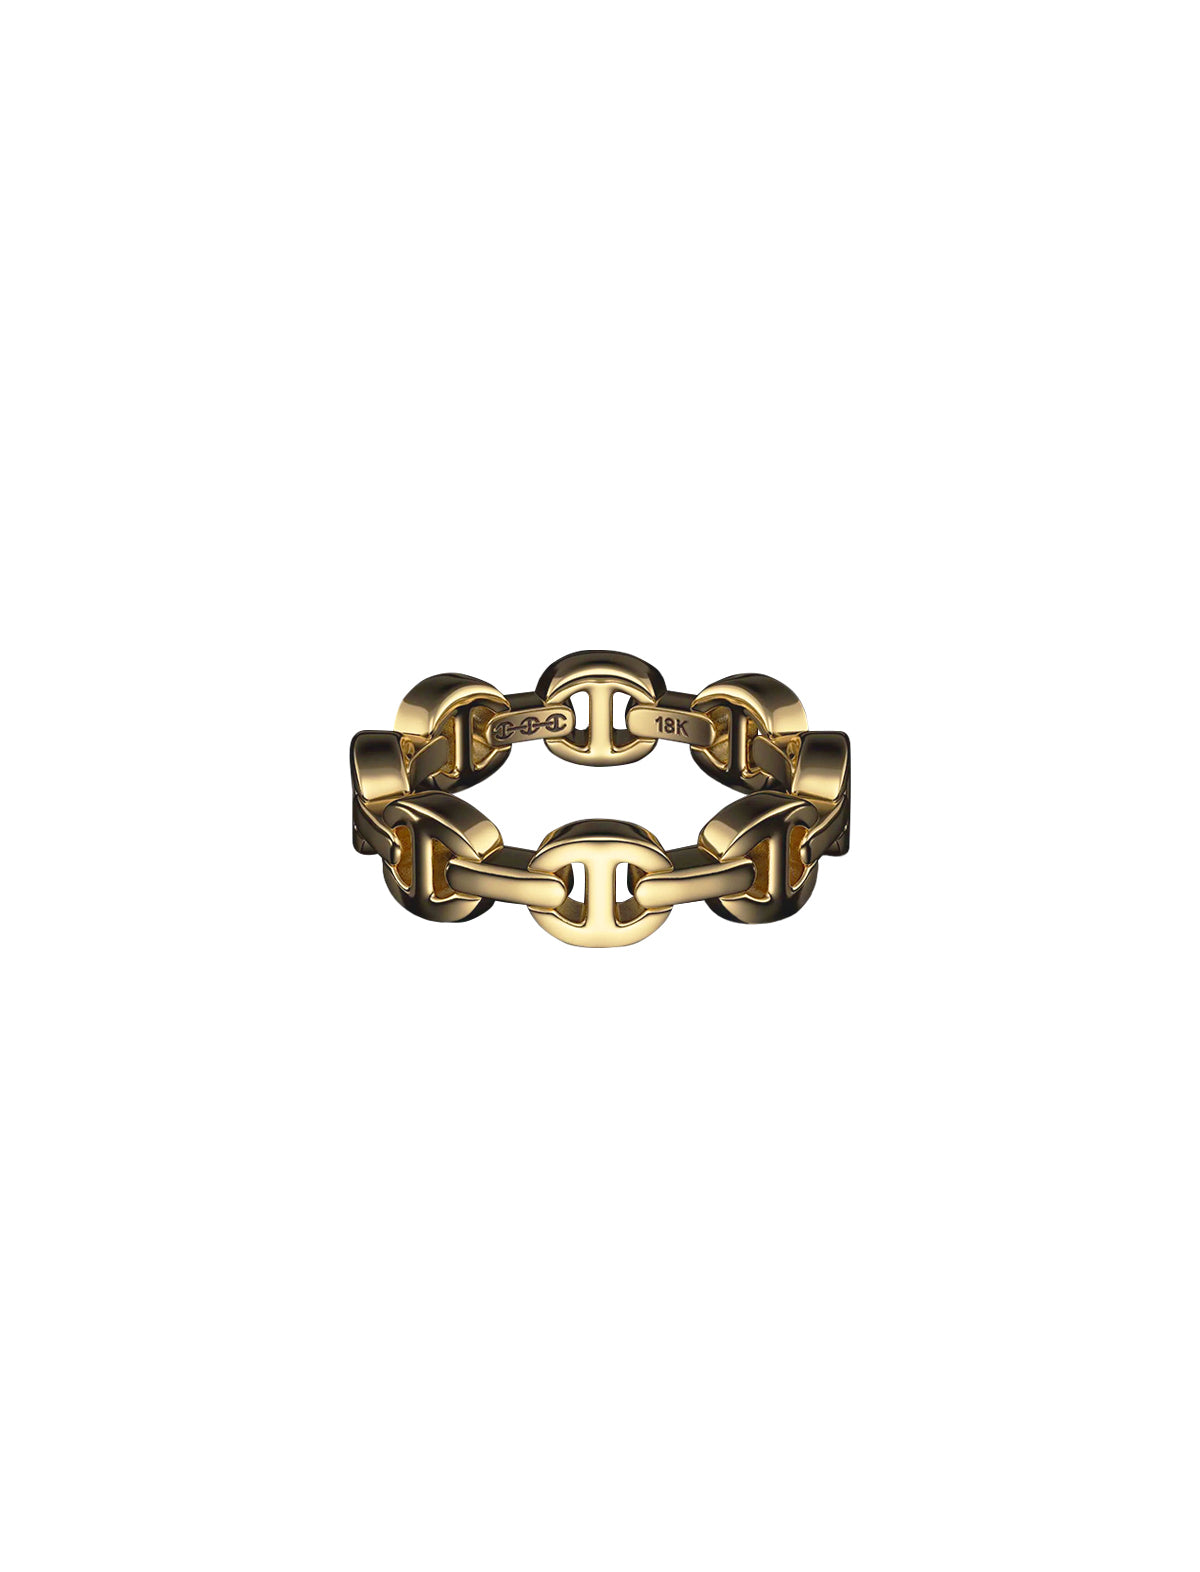 HOORSENBUHS Dame Tri-Link Ring 18k Yellow Gold